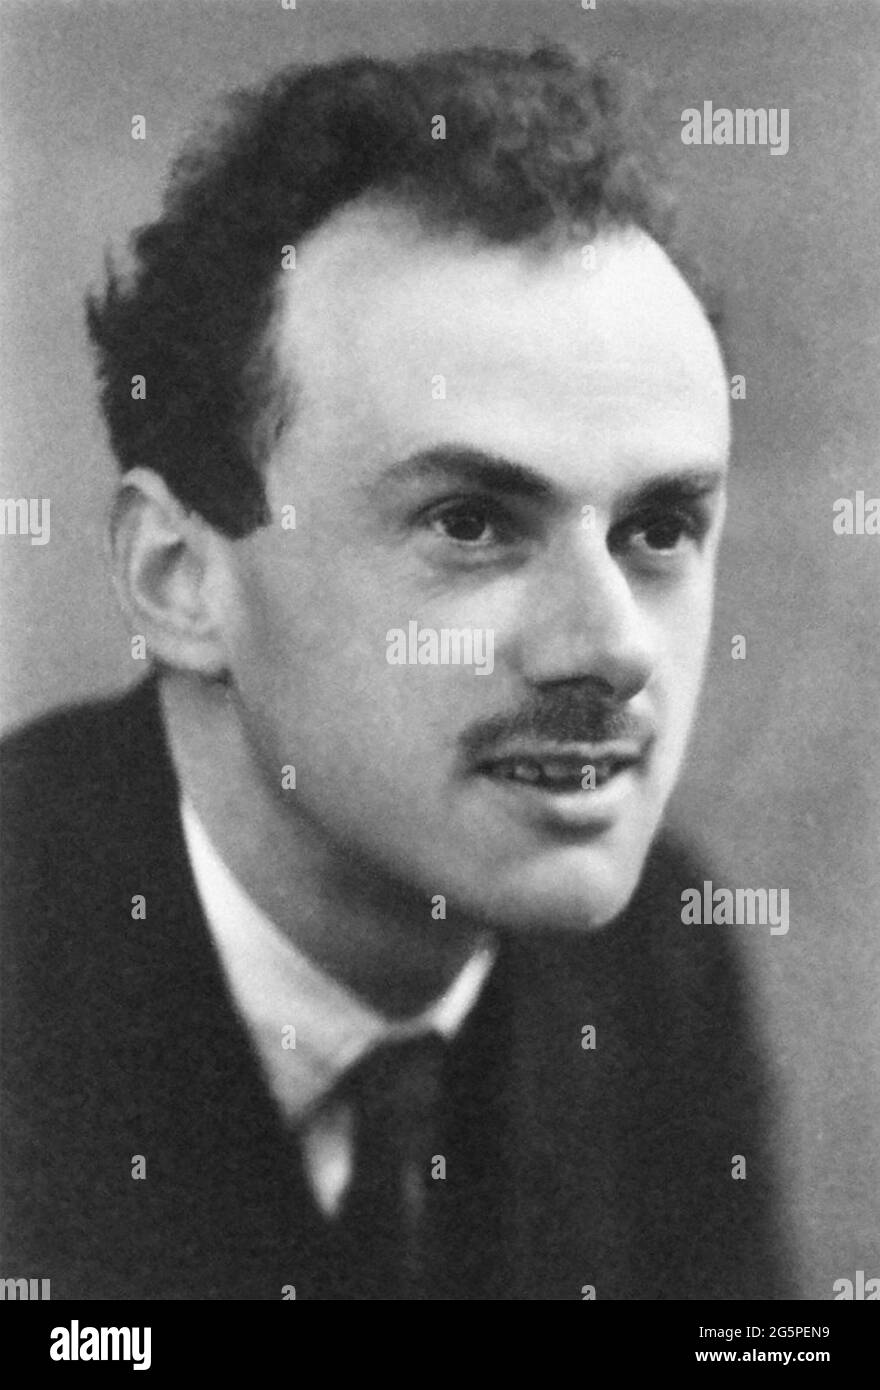 PAUL DIRAC (1902-1984) físico teórico inglés en 1933 cuando compartió el Premio Nobel de Física con Erwin Schrödiger Foto de stock